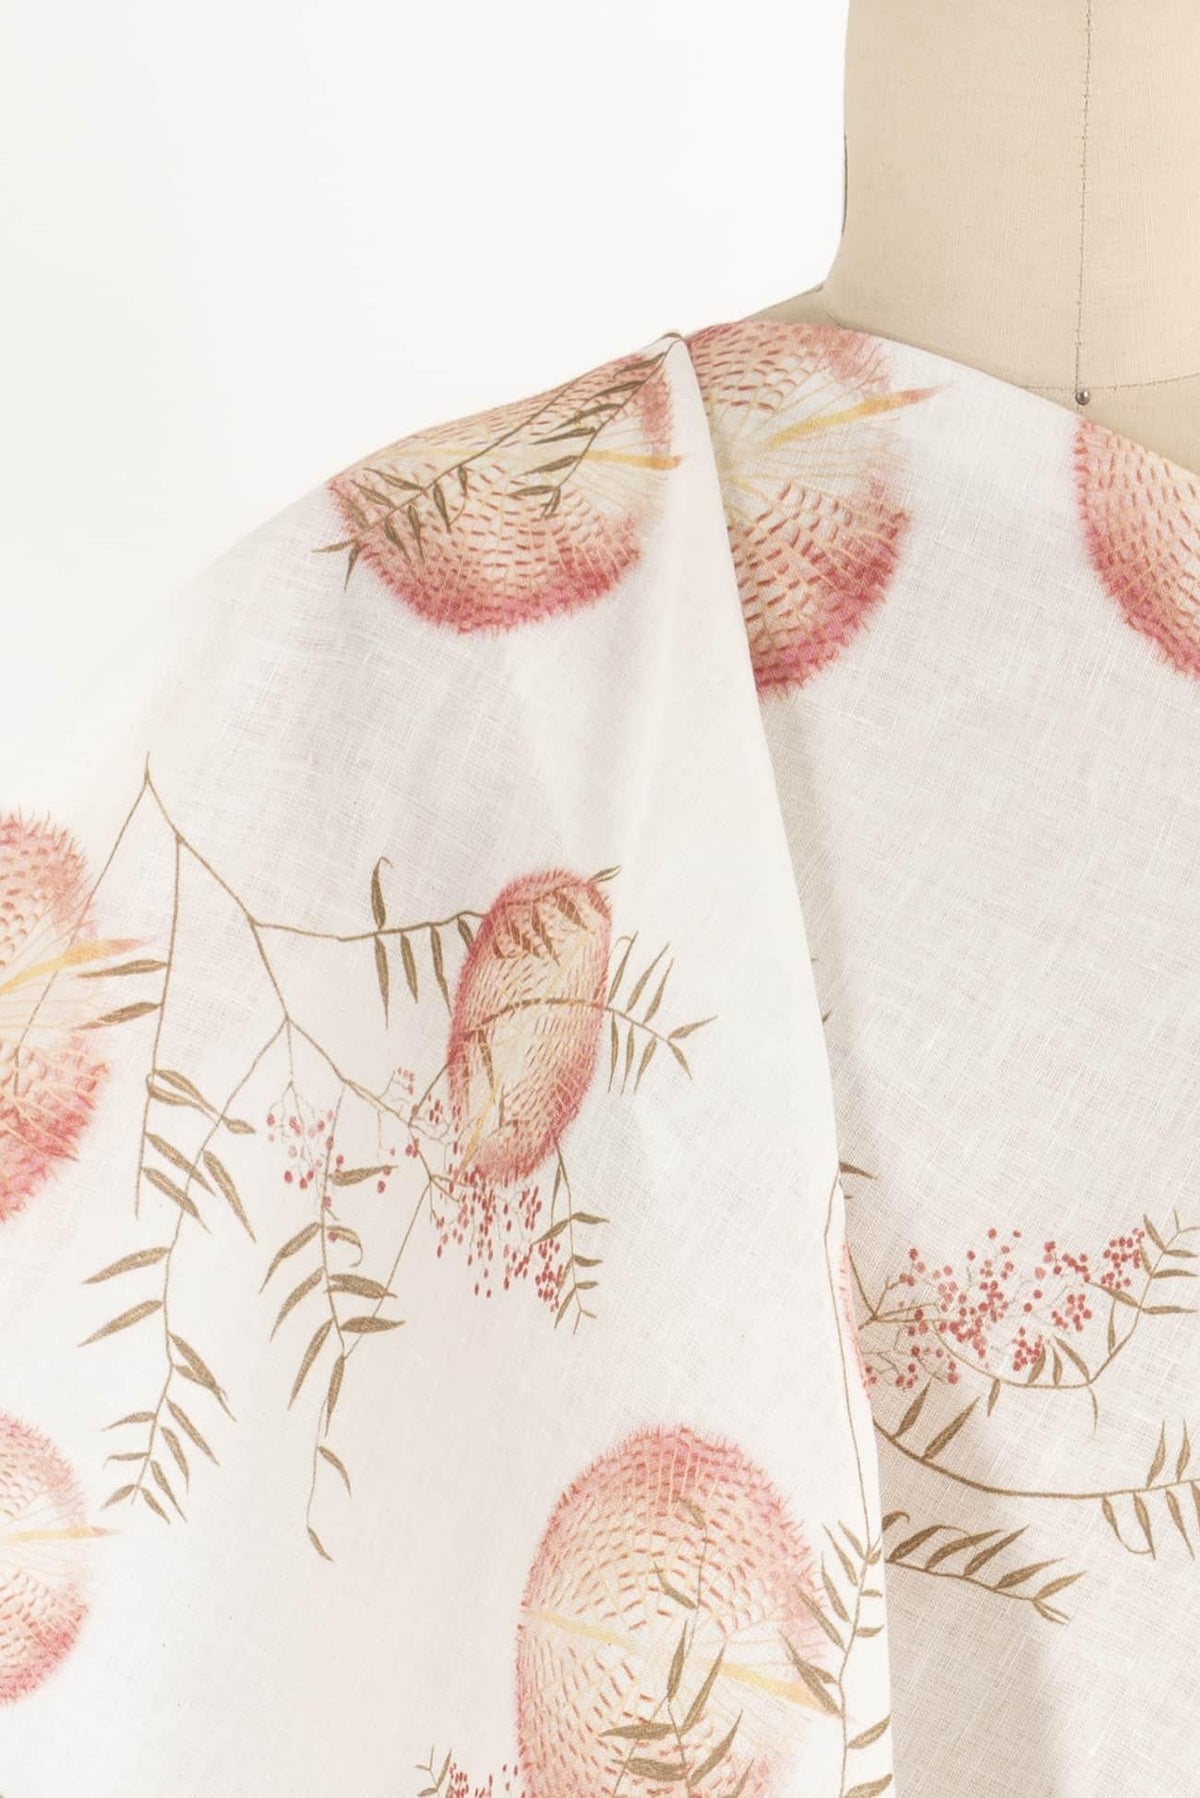 Nara Euro Linen Woven - Marcy Tilton Fabrics